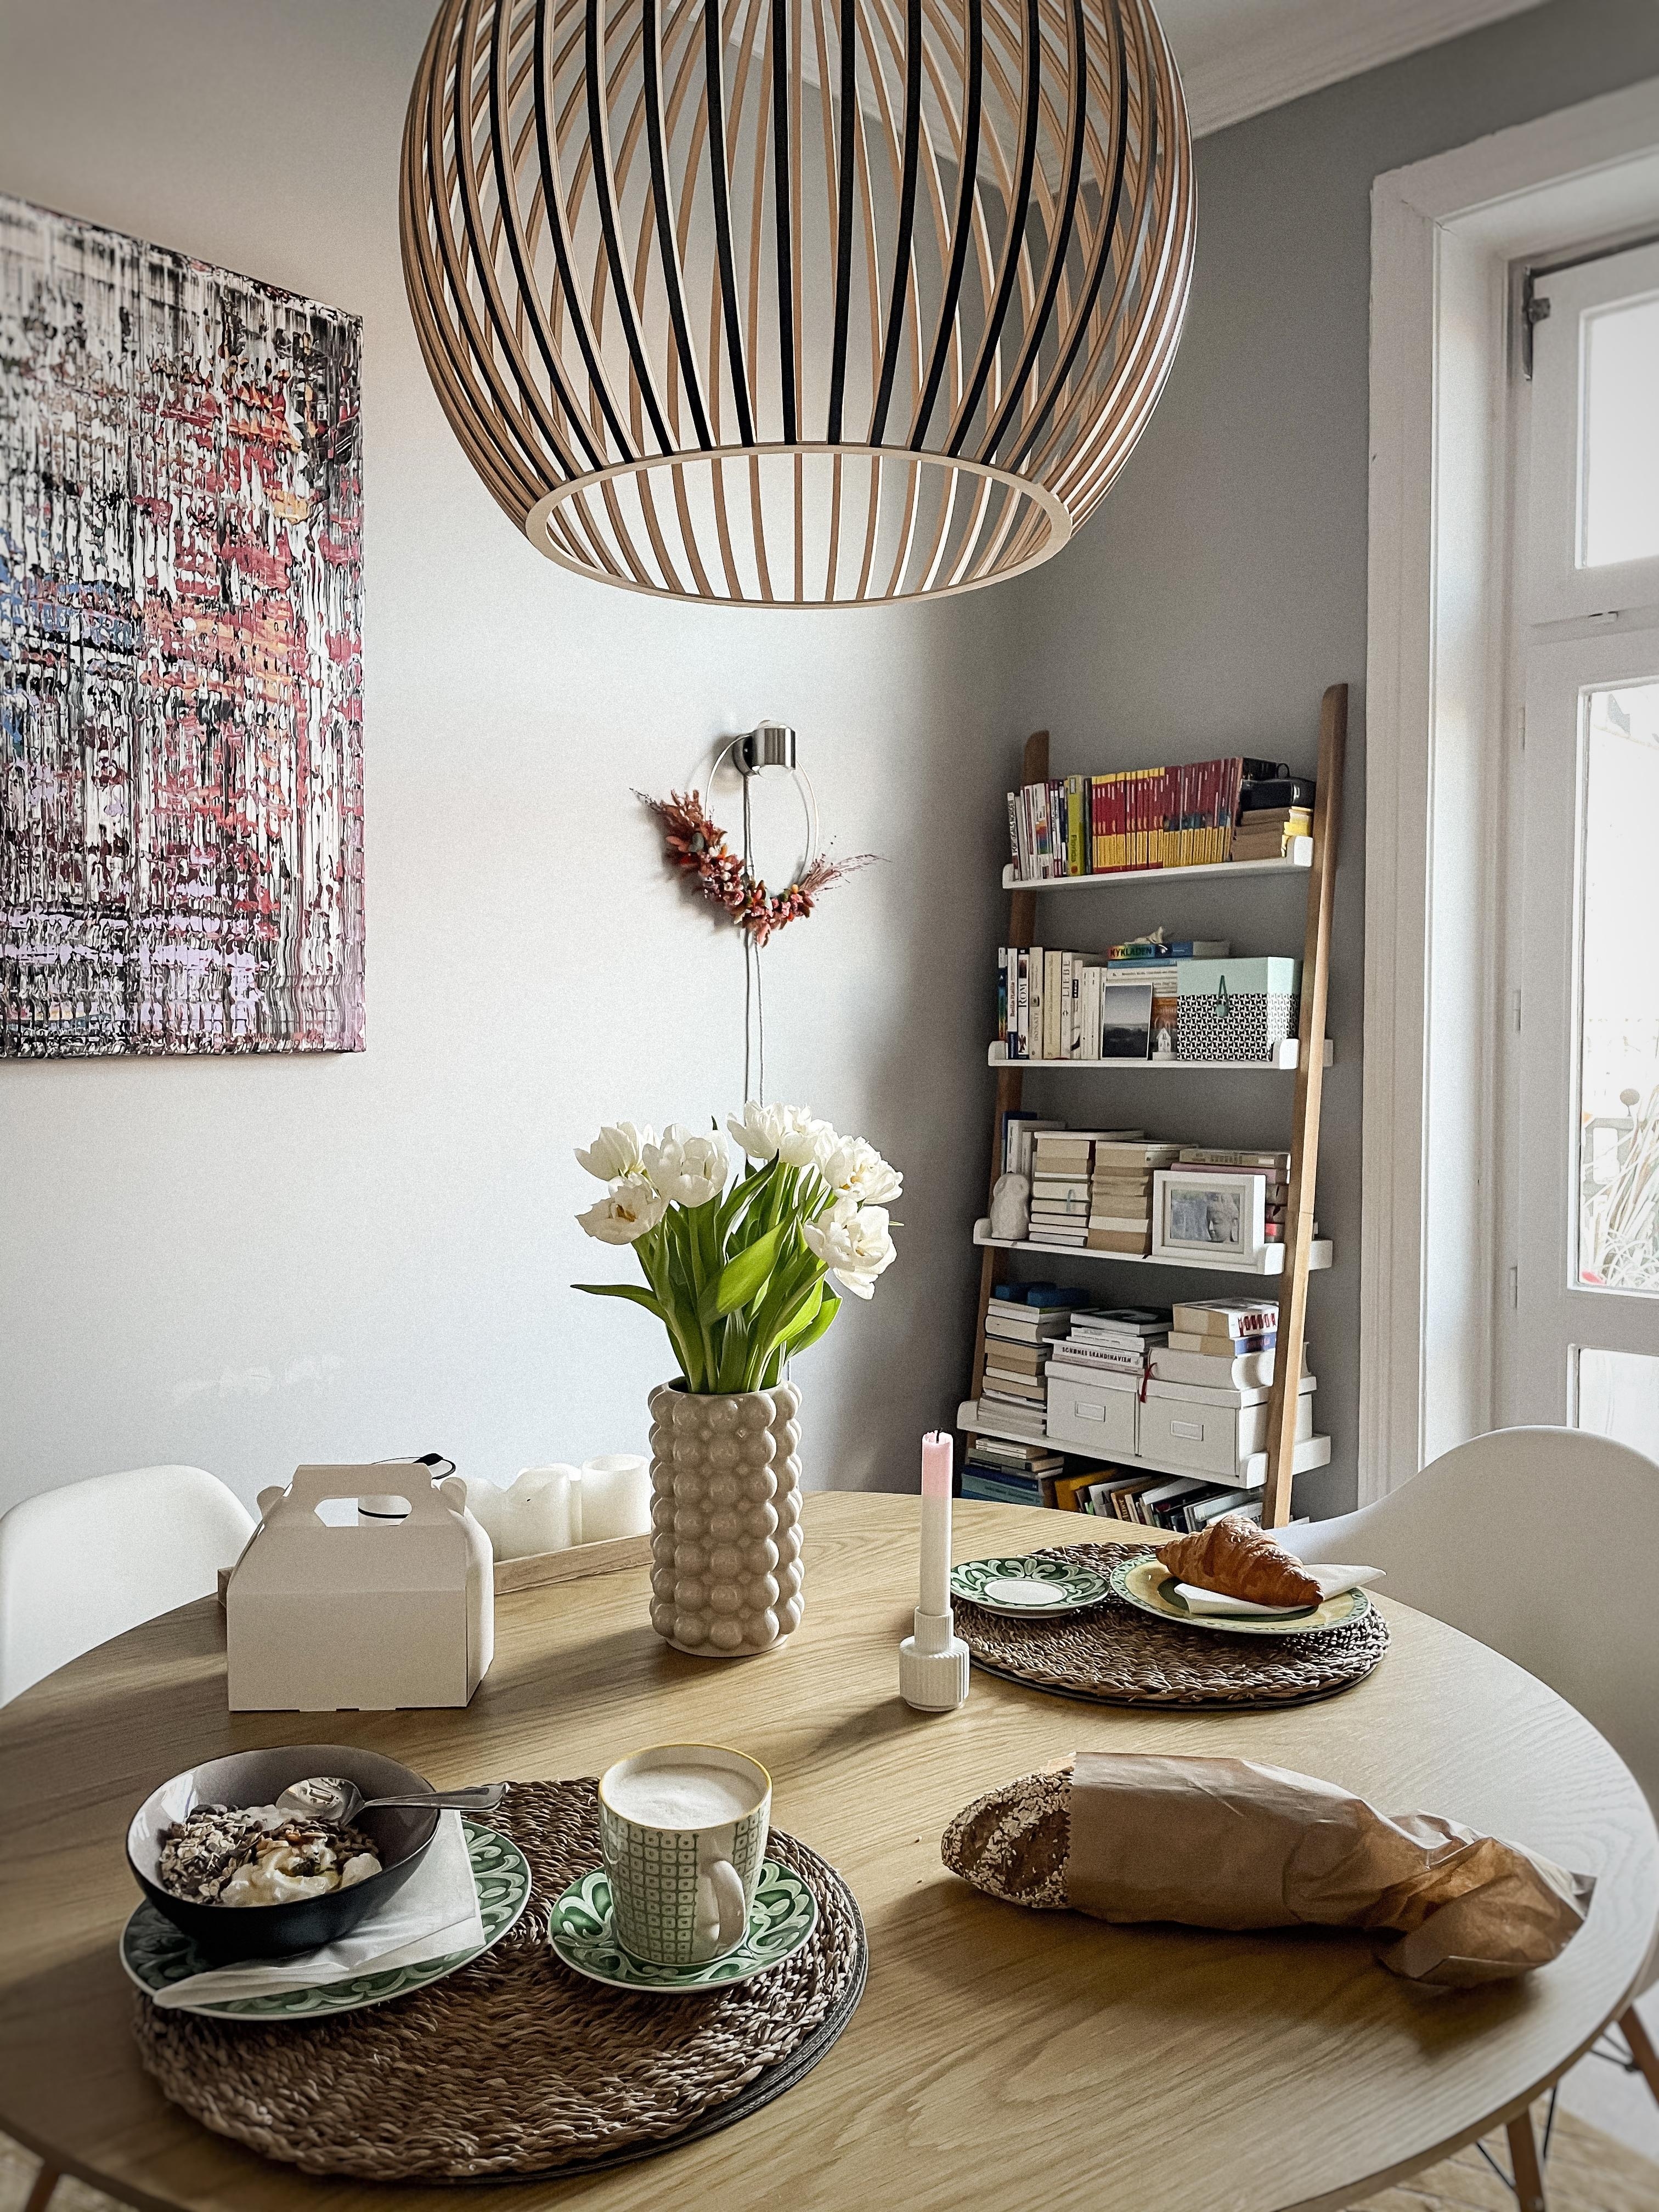 perfect sunday #interior #interiorstyle #interiordesign #lampe #artlover #esstisch #frühstück #tablesetting 